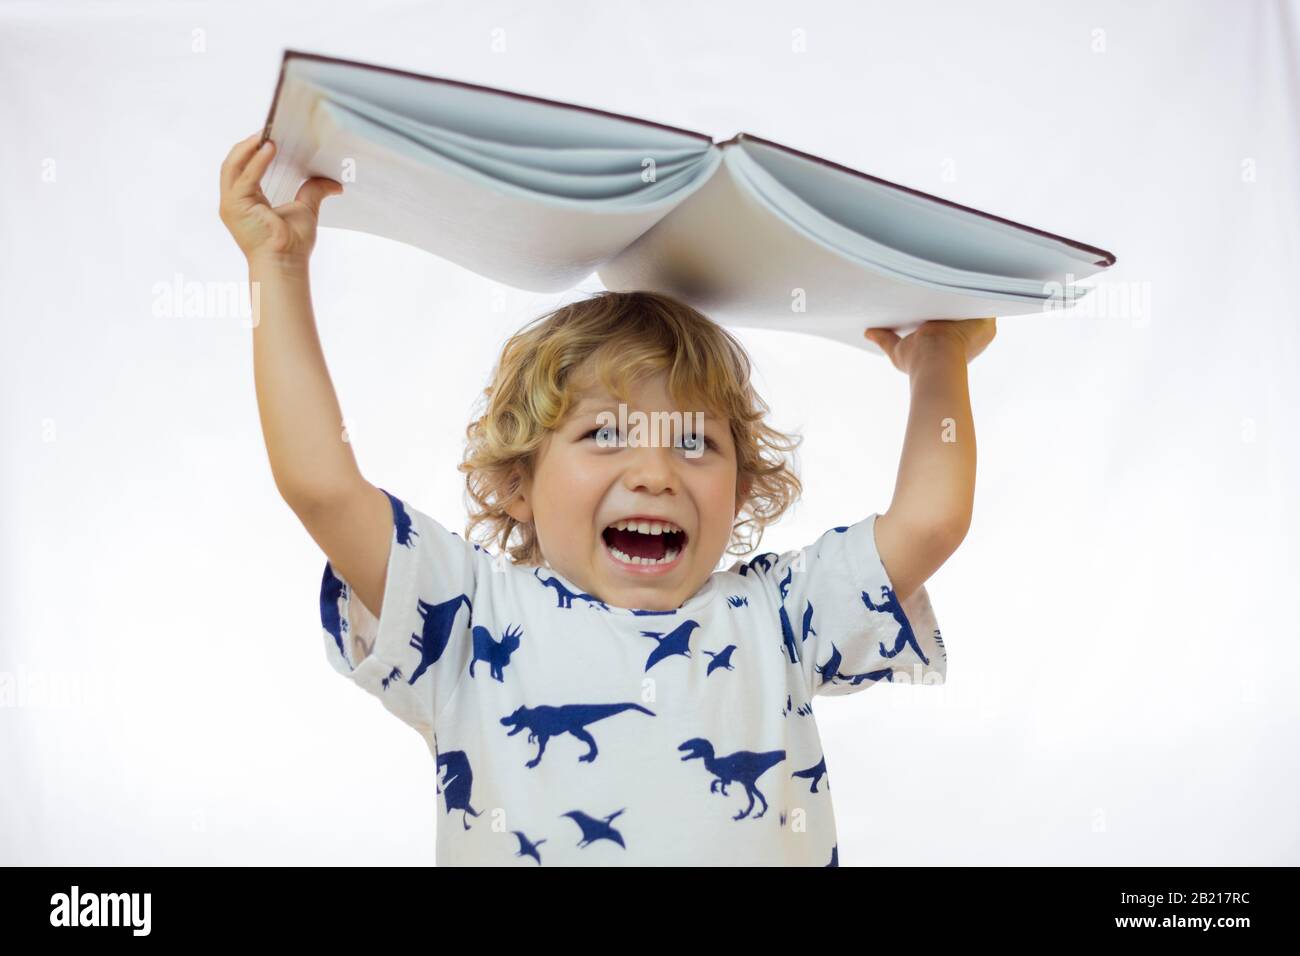 Ragazzino tra i 4 e i 5 anni che tiene un libro sopra la testa mentre sorride in piedi su sfondo bianco Foto Stock